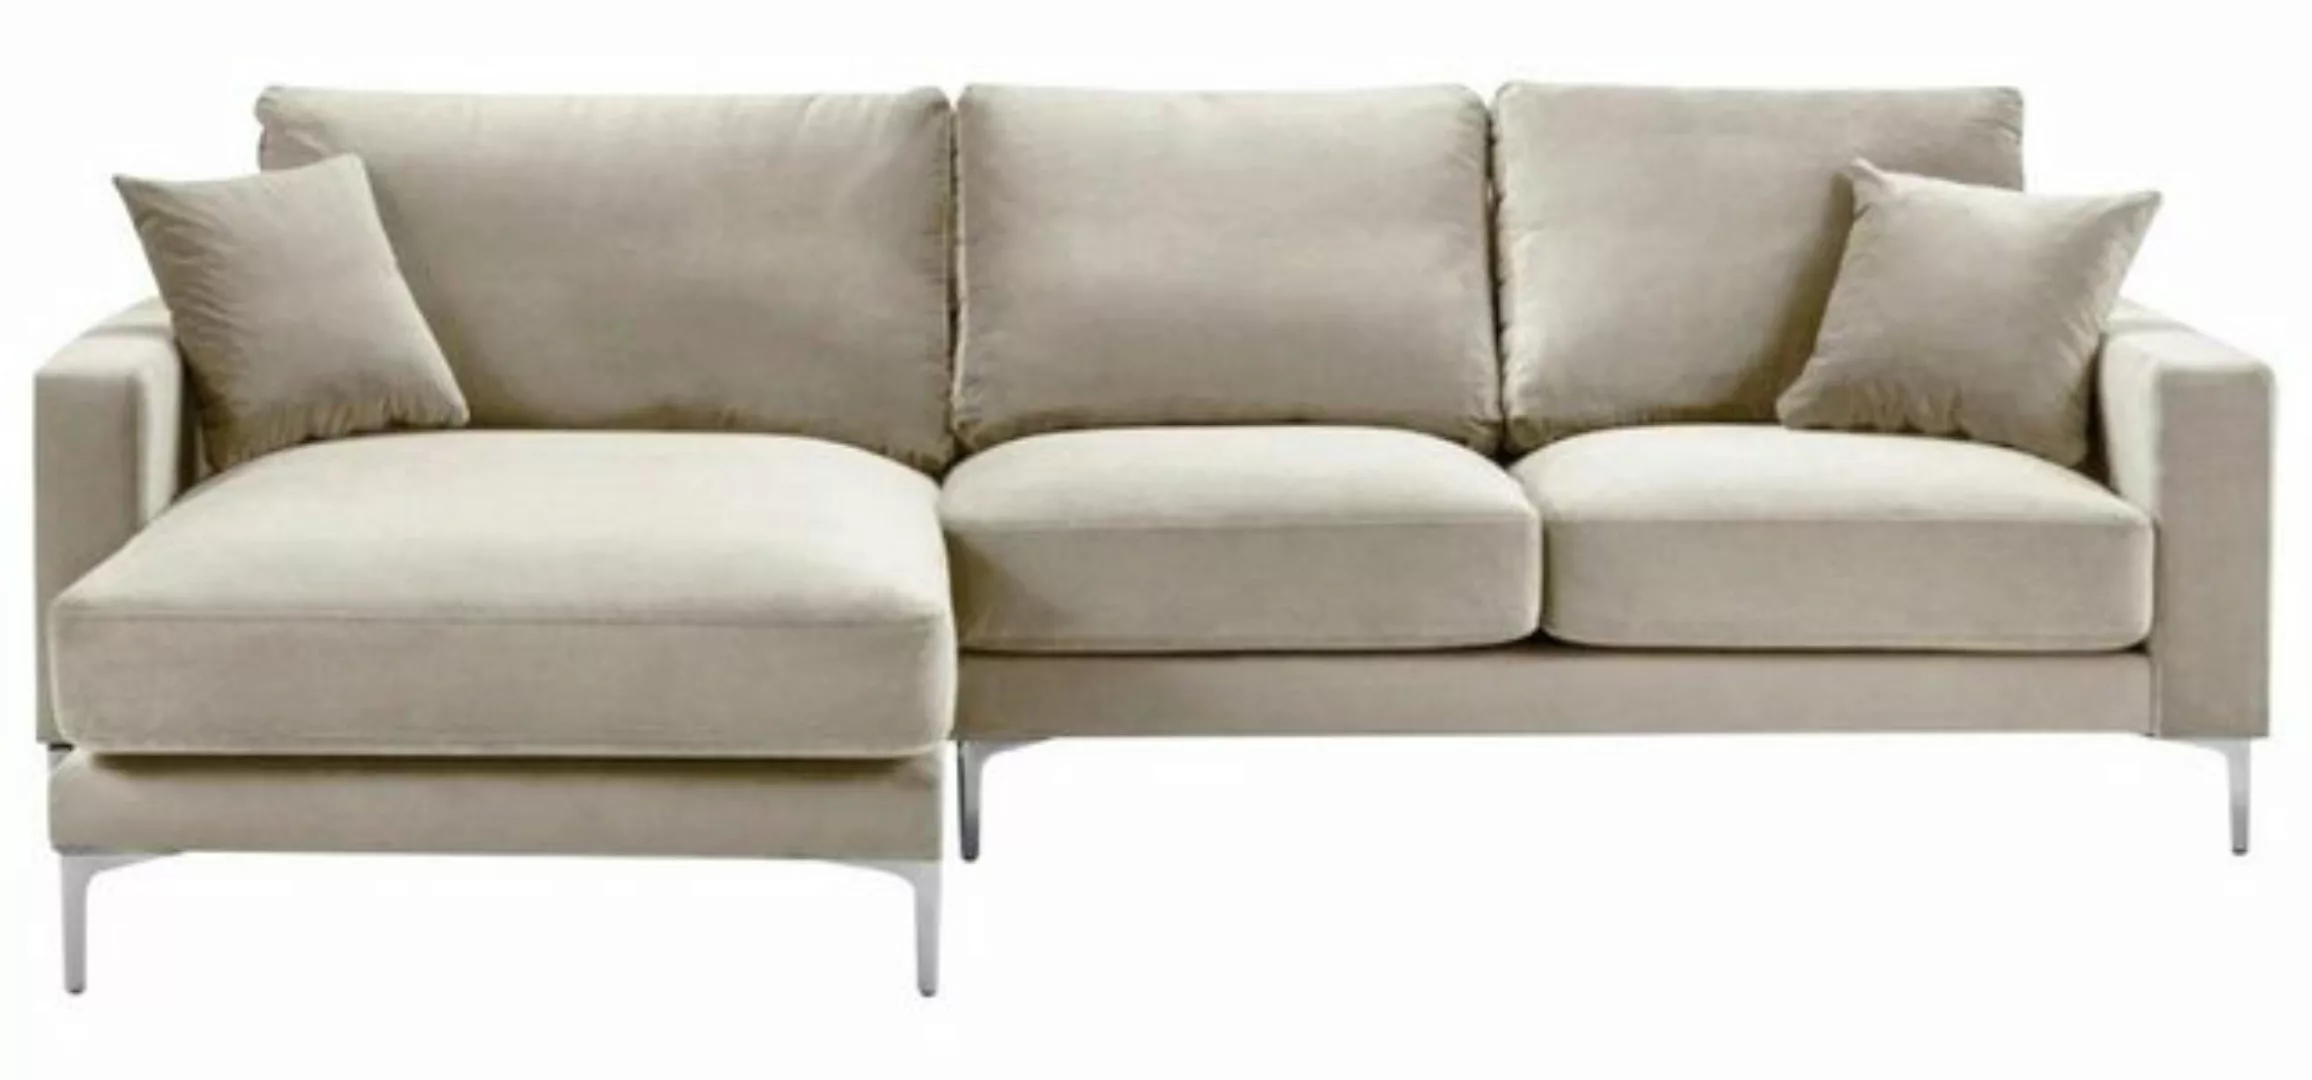 JVmoebel Ecksofa Luxus Beige Eckcouch modernes L-Form Sofa Polstermöbel Bra günstig online kaufen